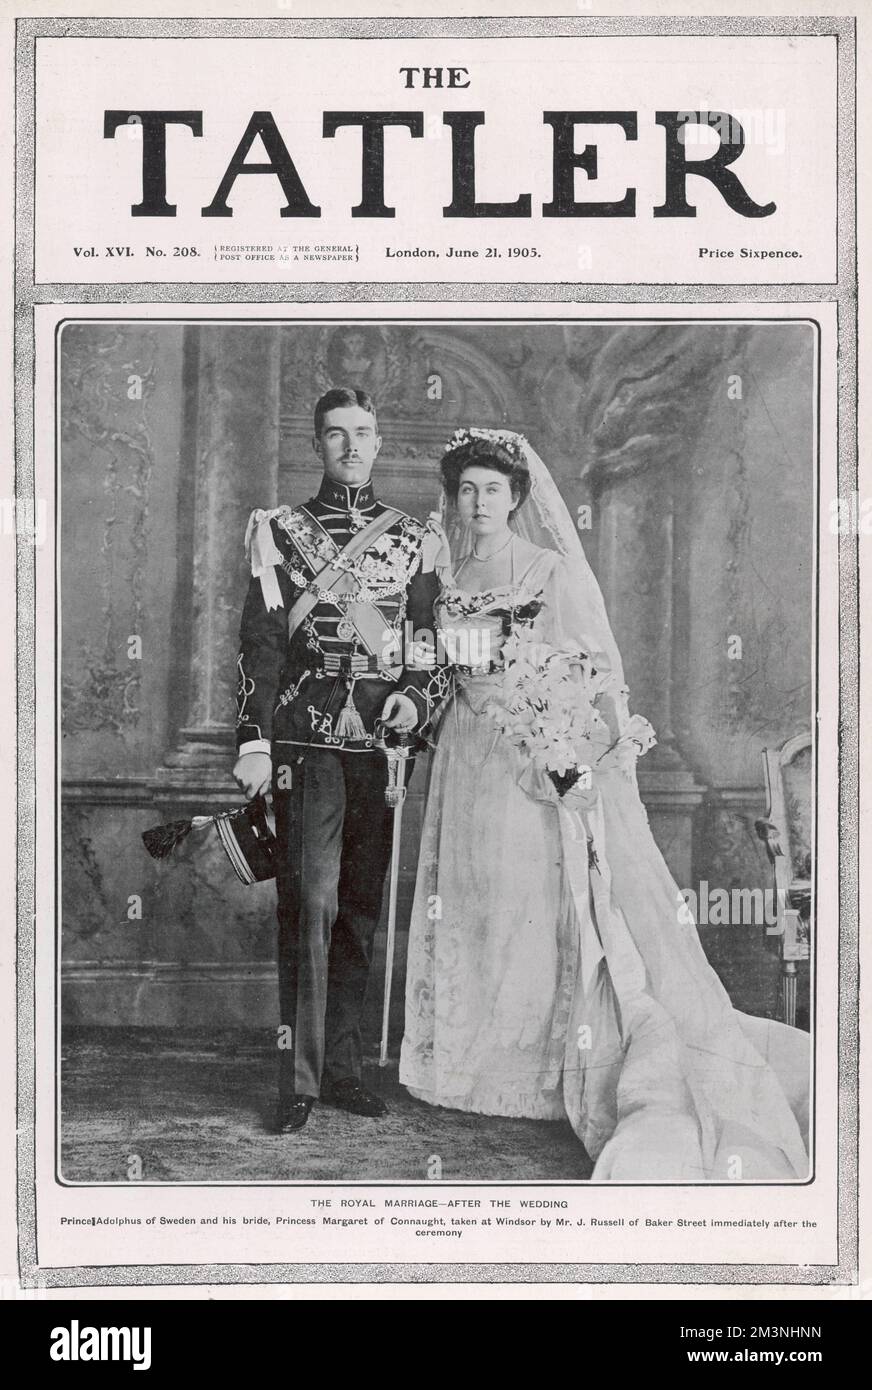 Prinz Gustavus Adolphus von Schweden, mit seiner Braut Prinzessin Margaret von Connaught an ihrem Hochzeitstag, dem 15. Juni 1905. Das Foto wurde direkt nach der Zeremonie in Windsor aufgenommen. Datum: 1905 Stockfoto